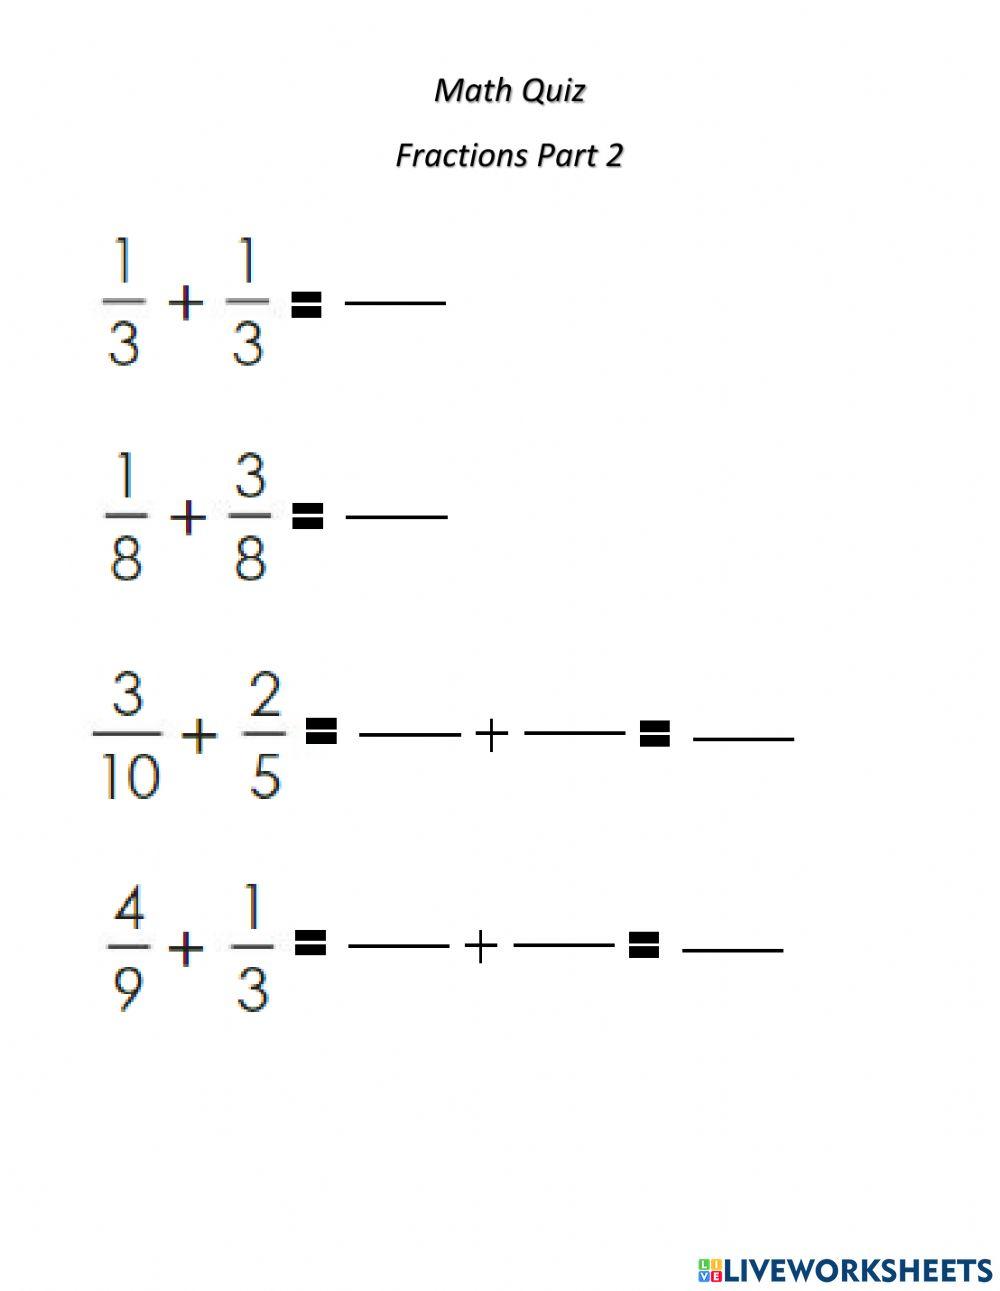 Math Quiz Part 2